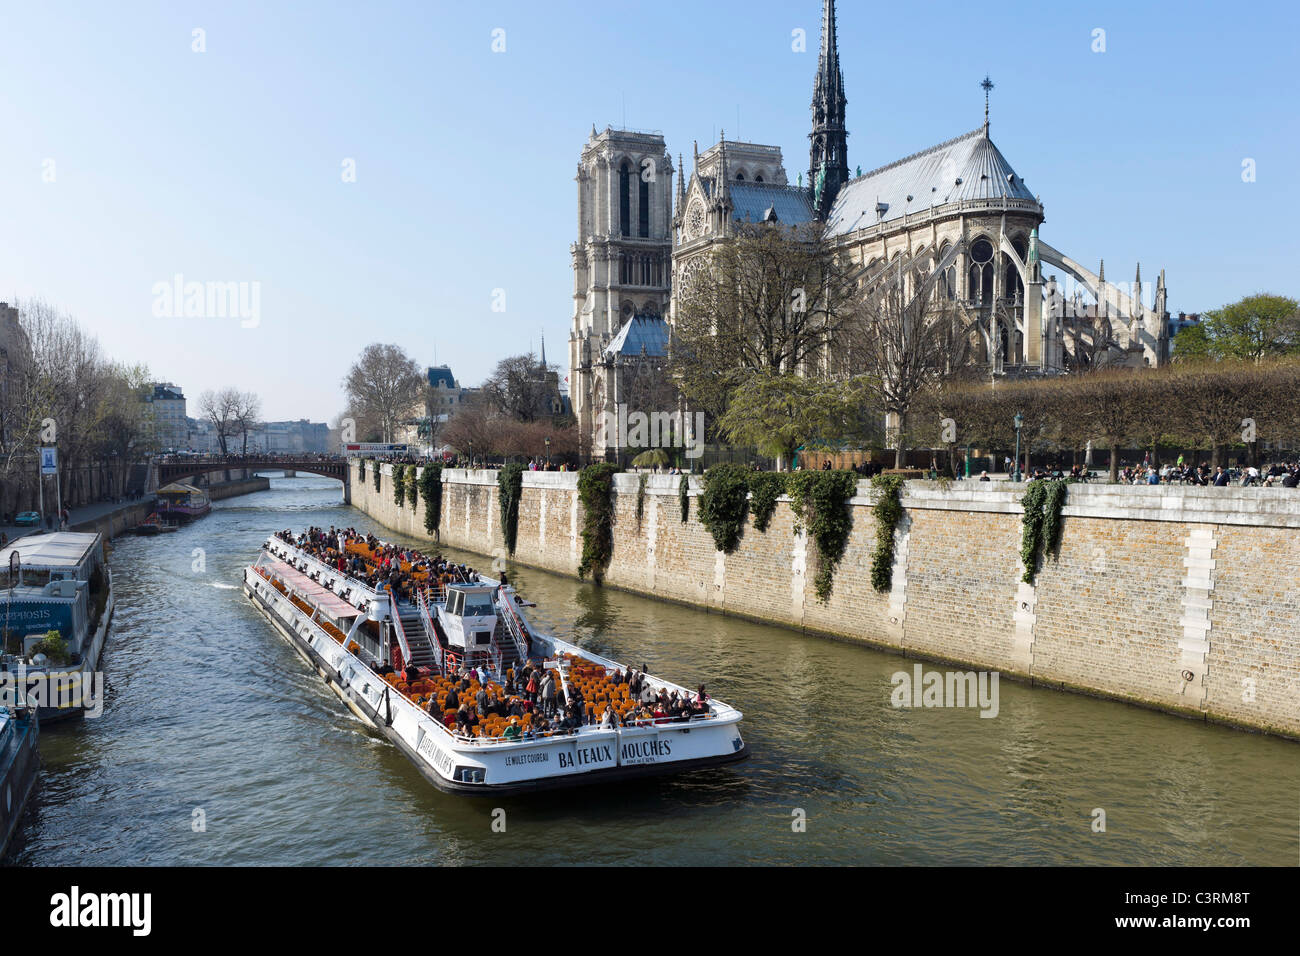 Bateau Mouche cruise boat on the River Seine in front of the Cathedral of Notre Dame de Paris, Ile de la Cite, Paris, France Stock Photo